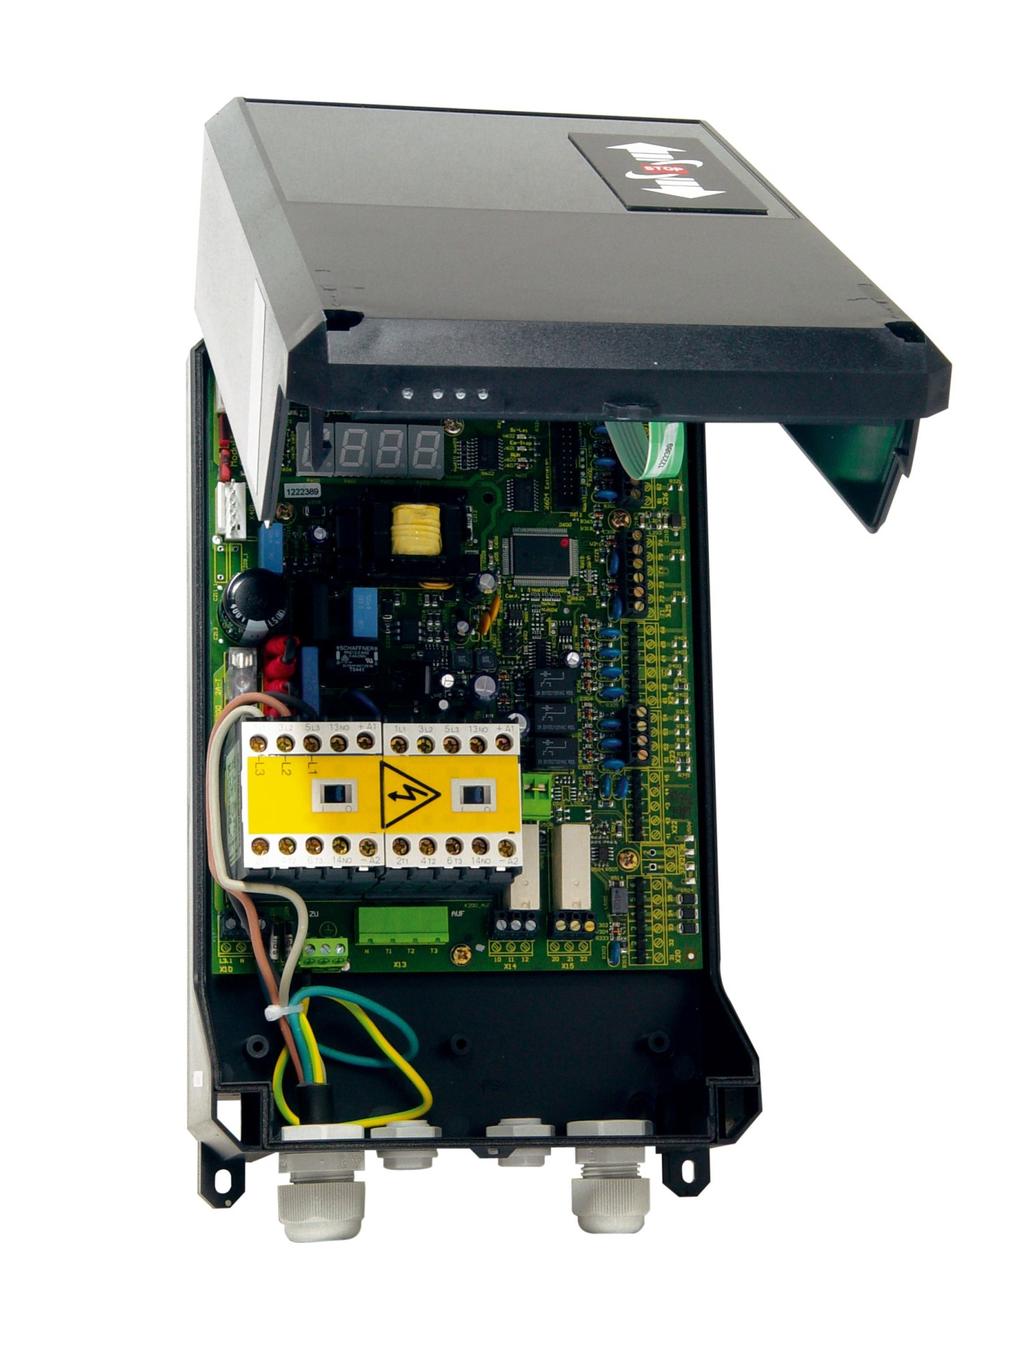 Steuerung WUA Die Komfort - Torsteuerung TST WU A bietet als TÜV zertifizierte Steuerung nach DIN 12453 dem Benutzer eine flexible Funktionalität durch das umfangreiche Parametriersystem.